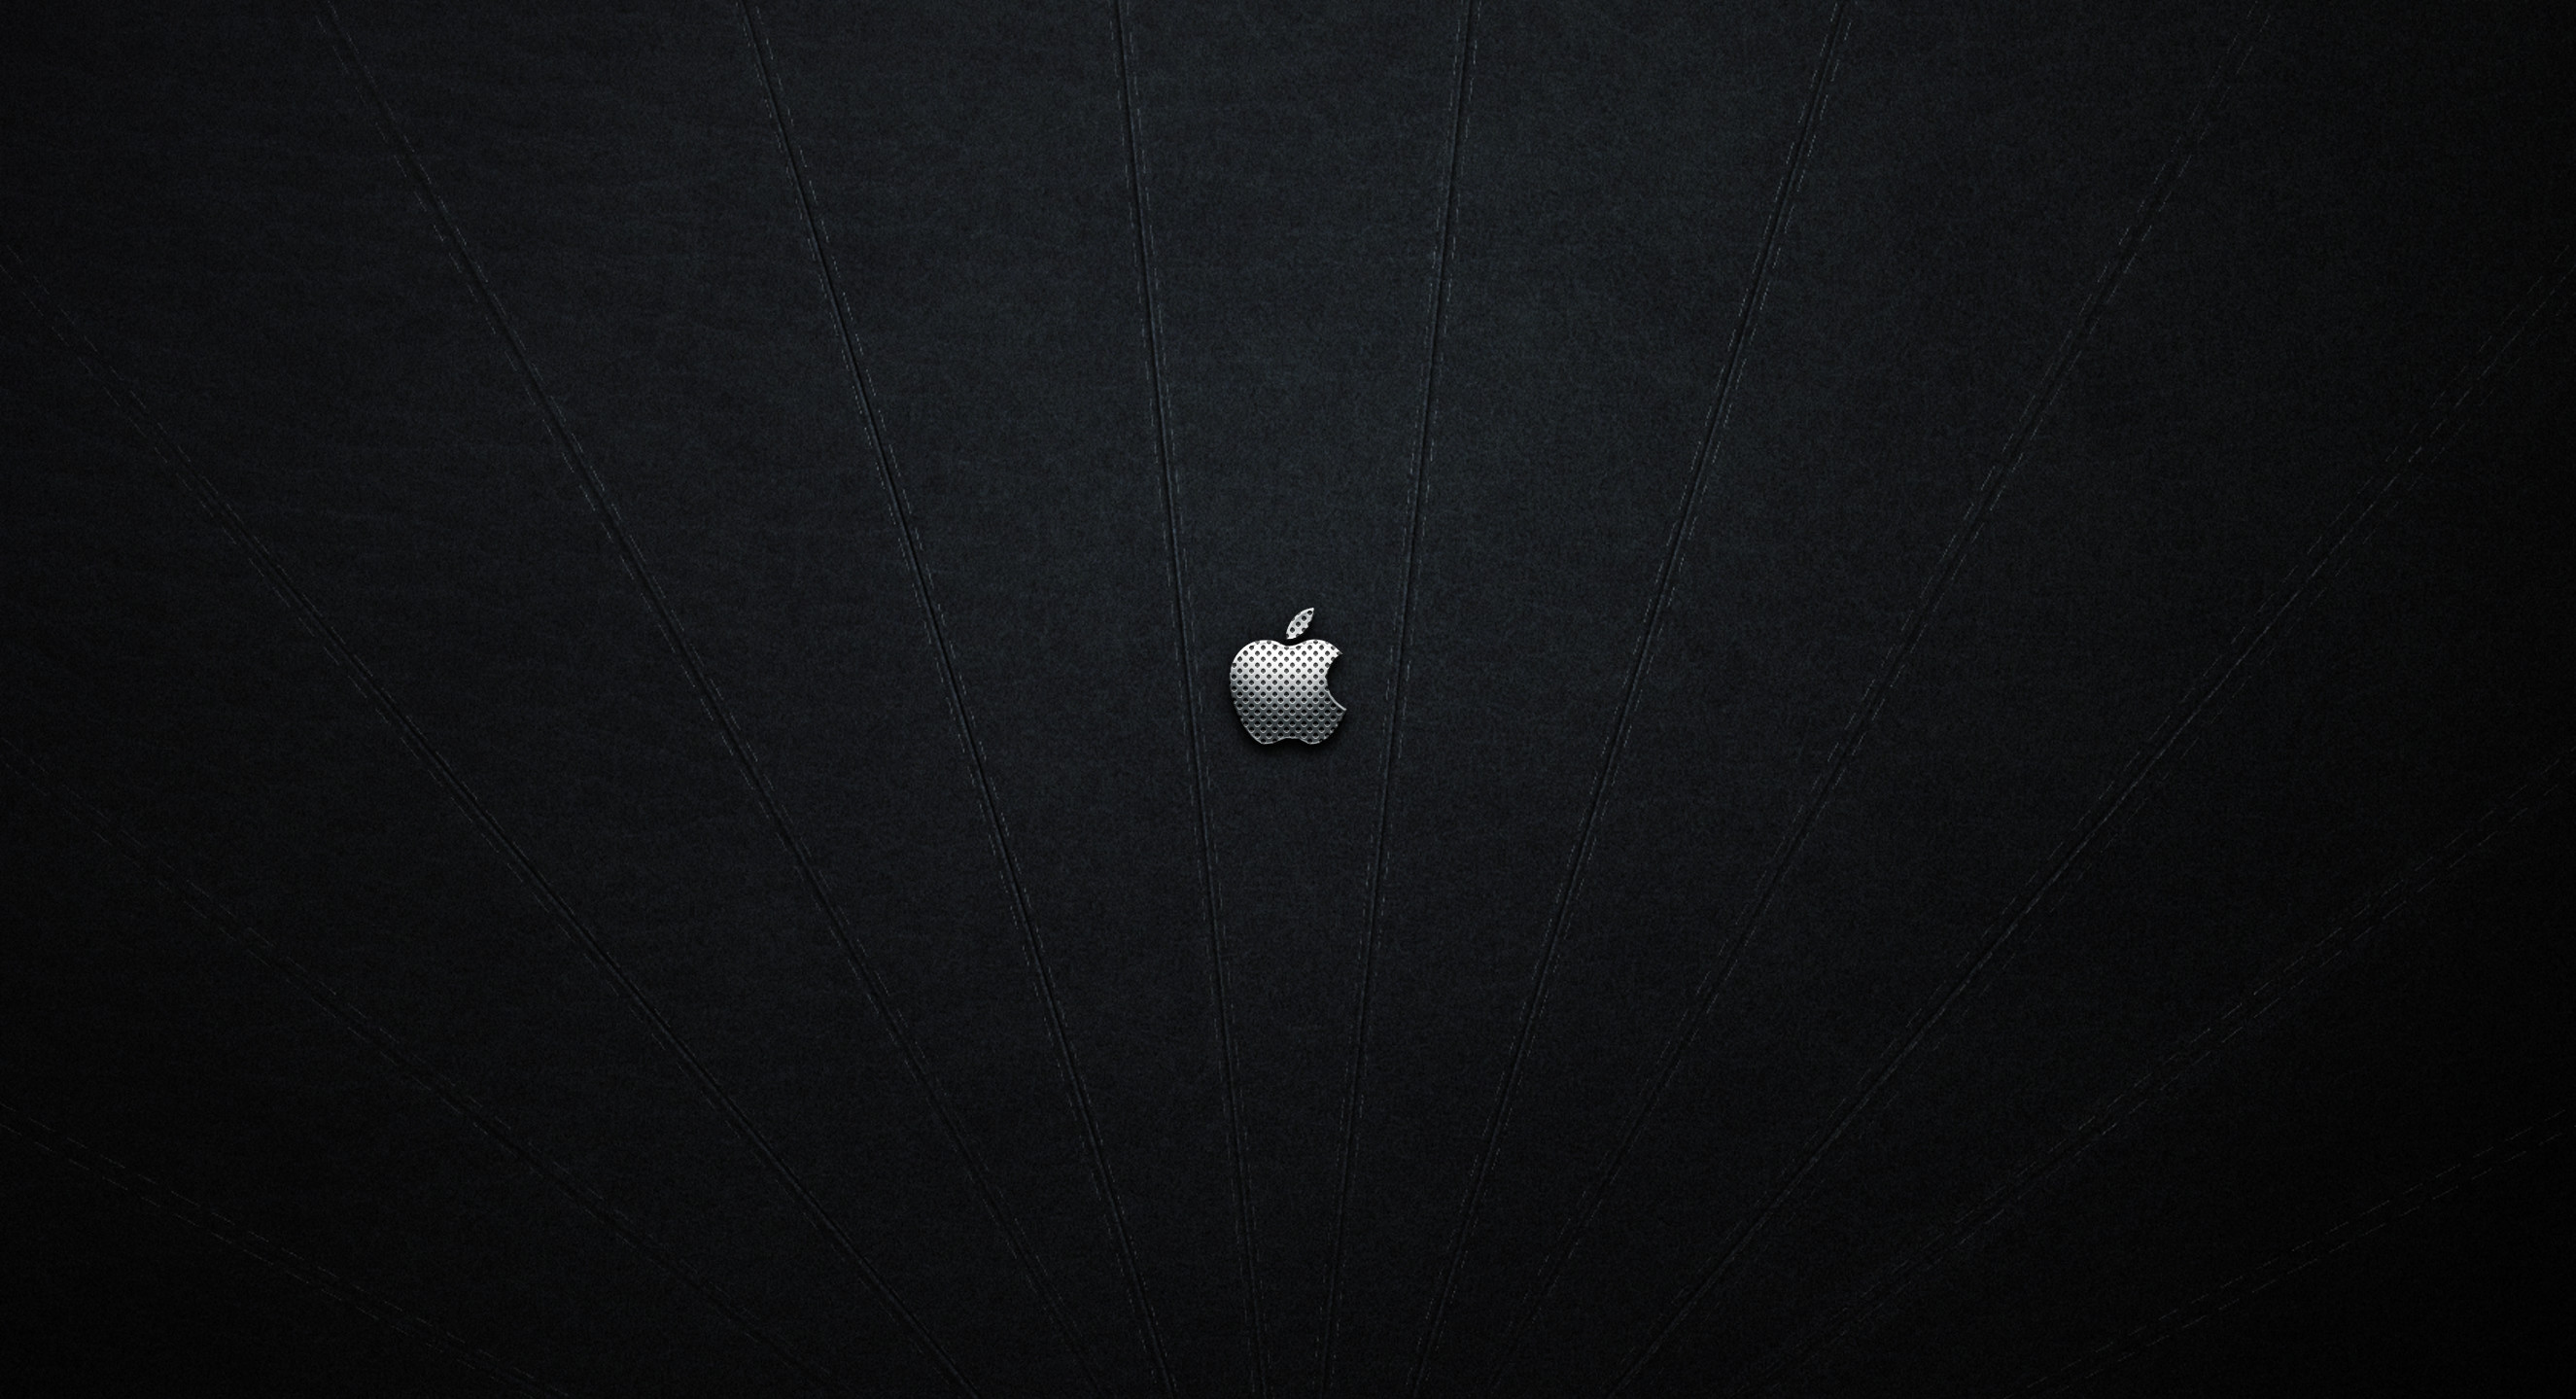 35 Gambar Apple Logo Wallpaper Hd Black terbaru 2020